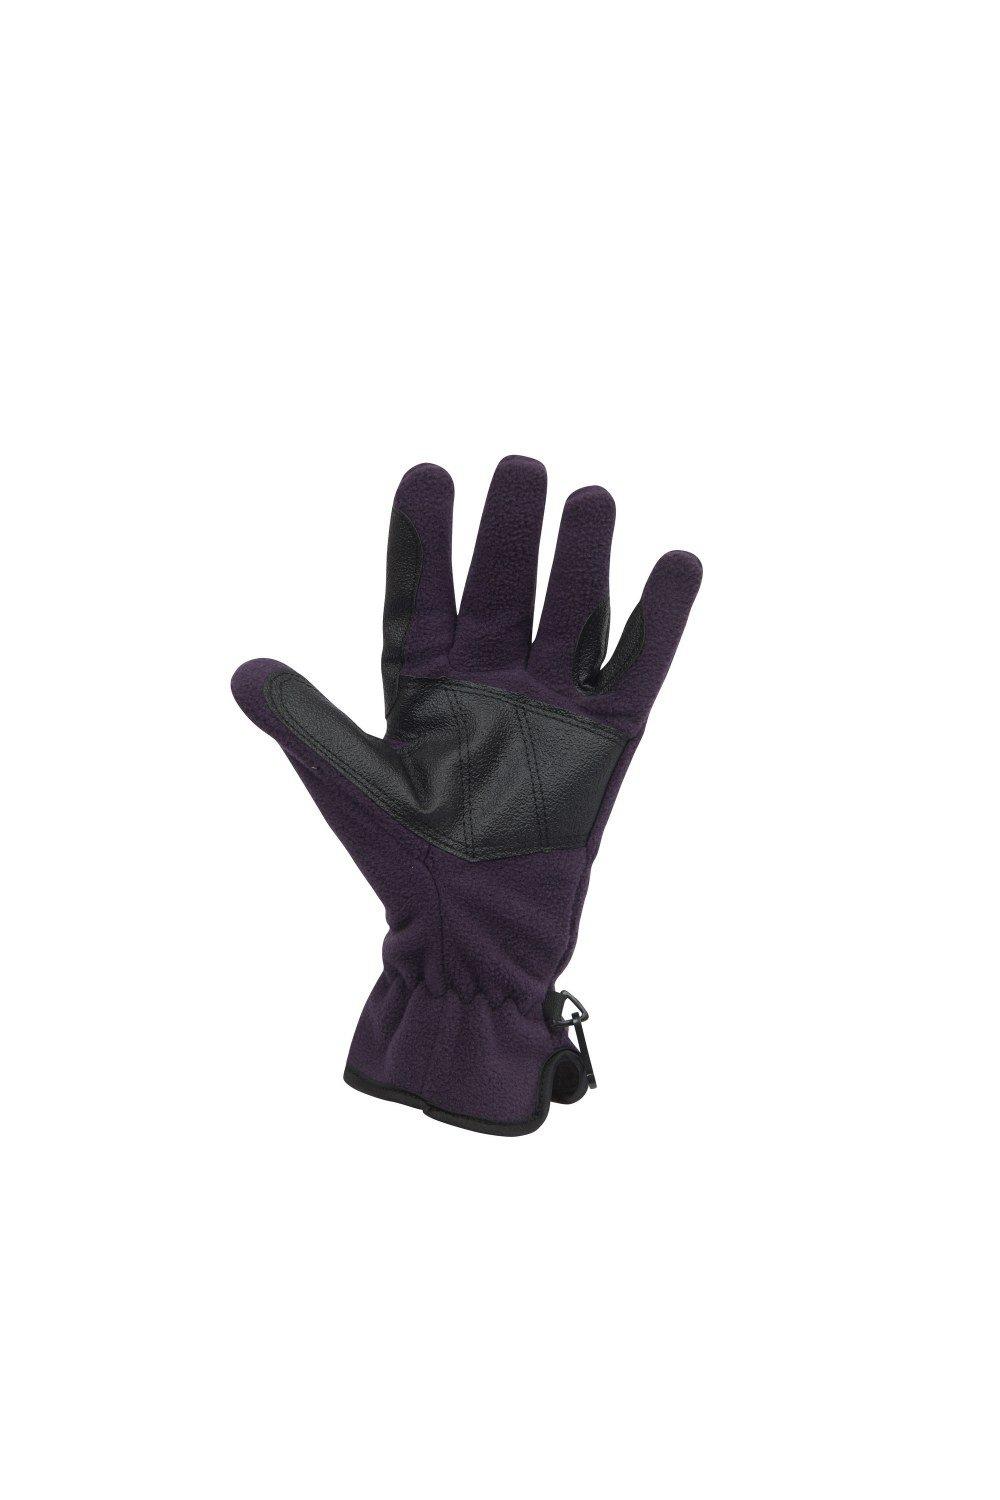 Флисовые перчатки для верховой езды Polar Dublin, фиолетовый перчатки atmosphere fresh биколор размер m усиленные пальцы пвх